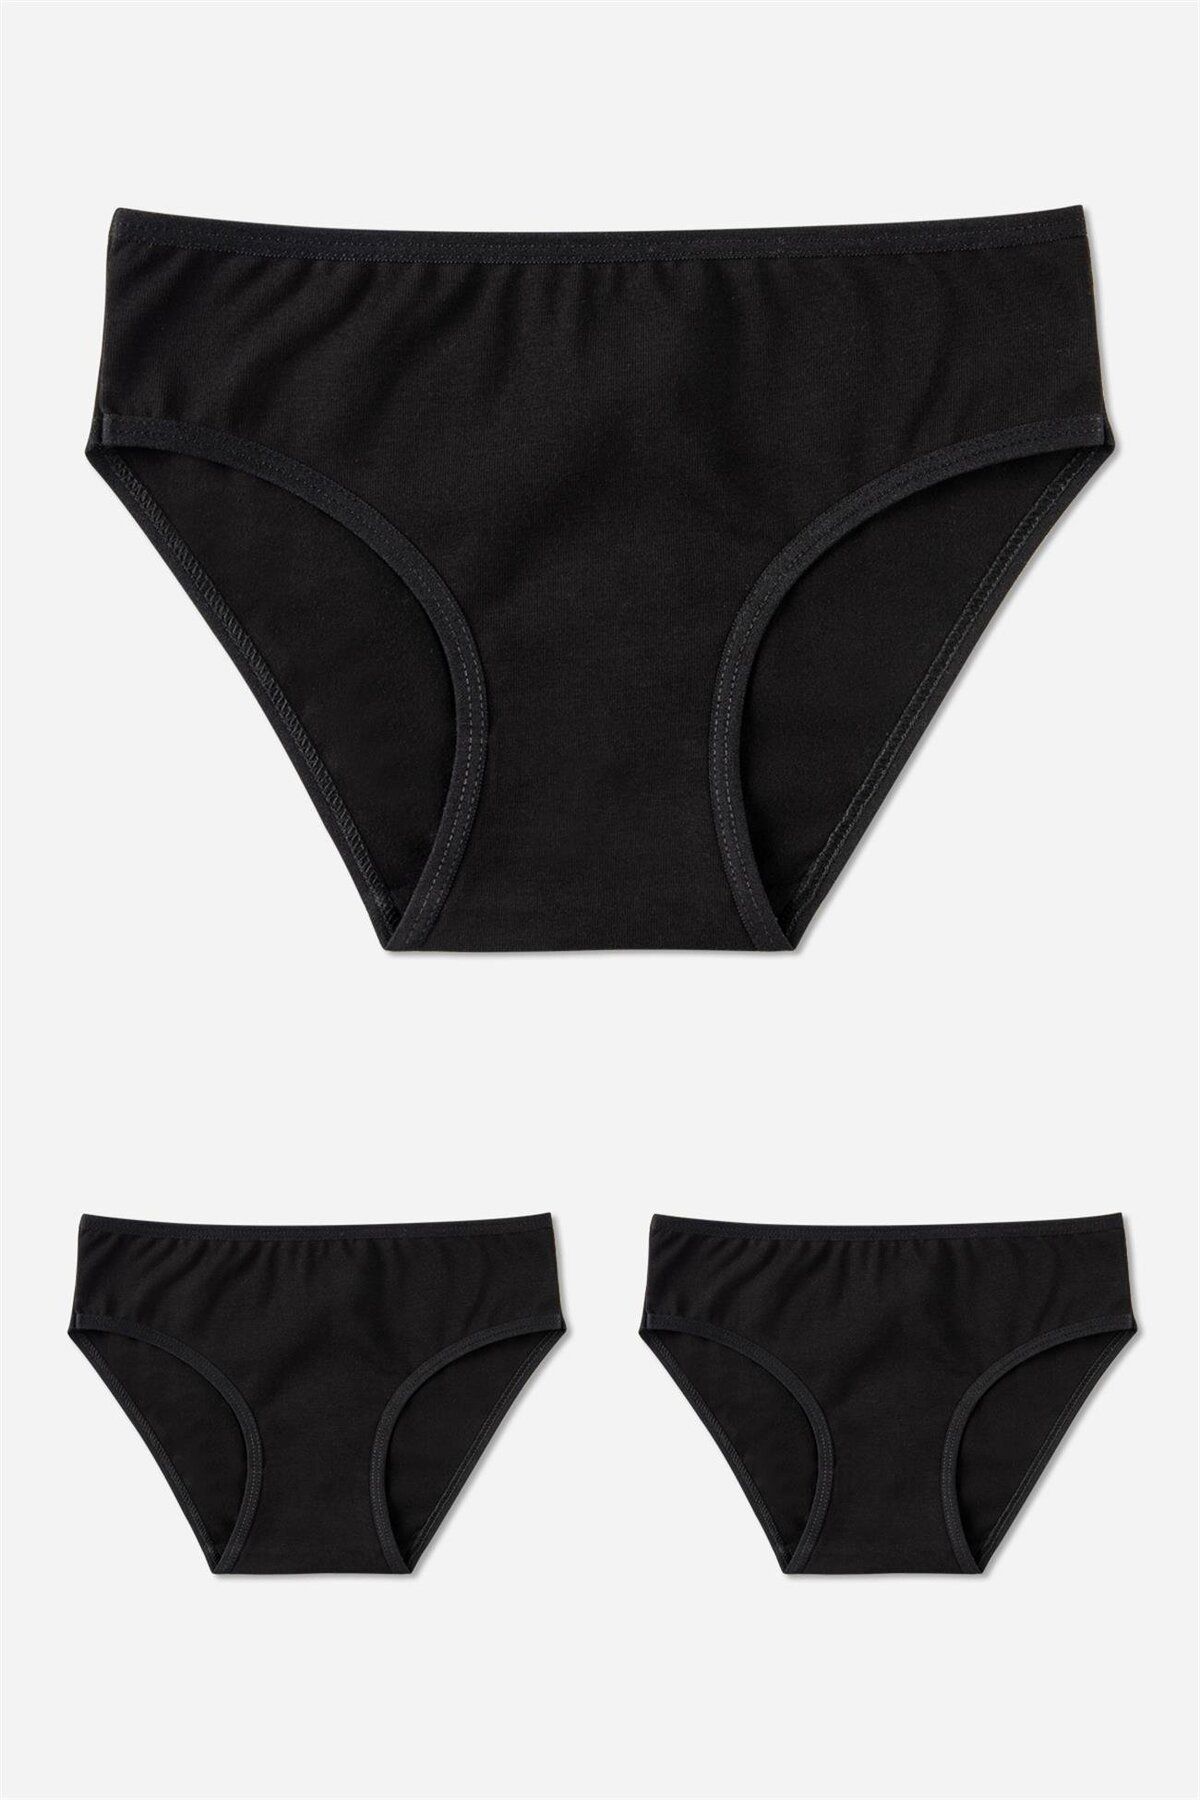 BAYKAR Kız Çocuk Pamuklu Bikini Kesim Düz Basic Külot 3'lü Paket Siyah 5200-3